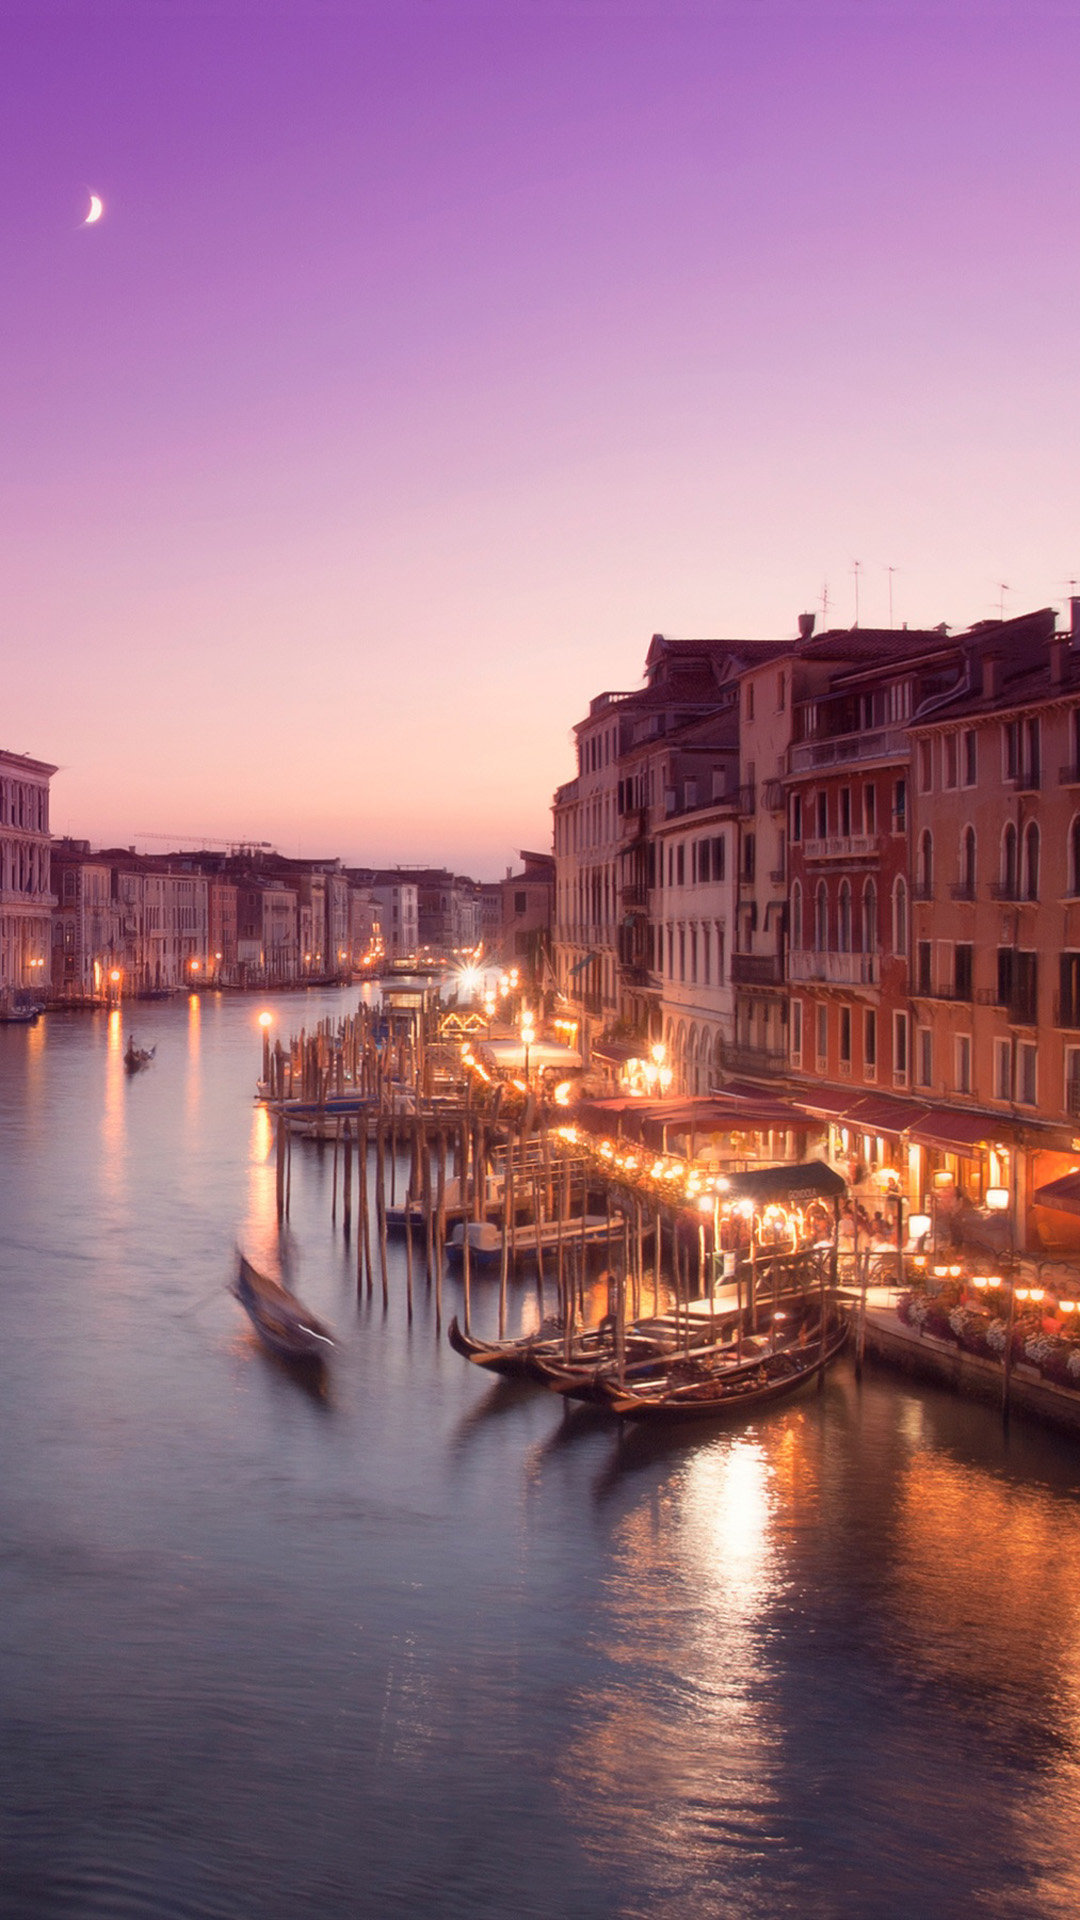 ヴェネツィアの美しい夜景 おしゃれな夜景のiphone壁紙 Iphone Wallpapers